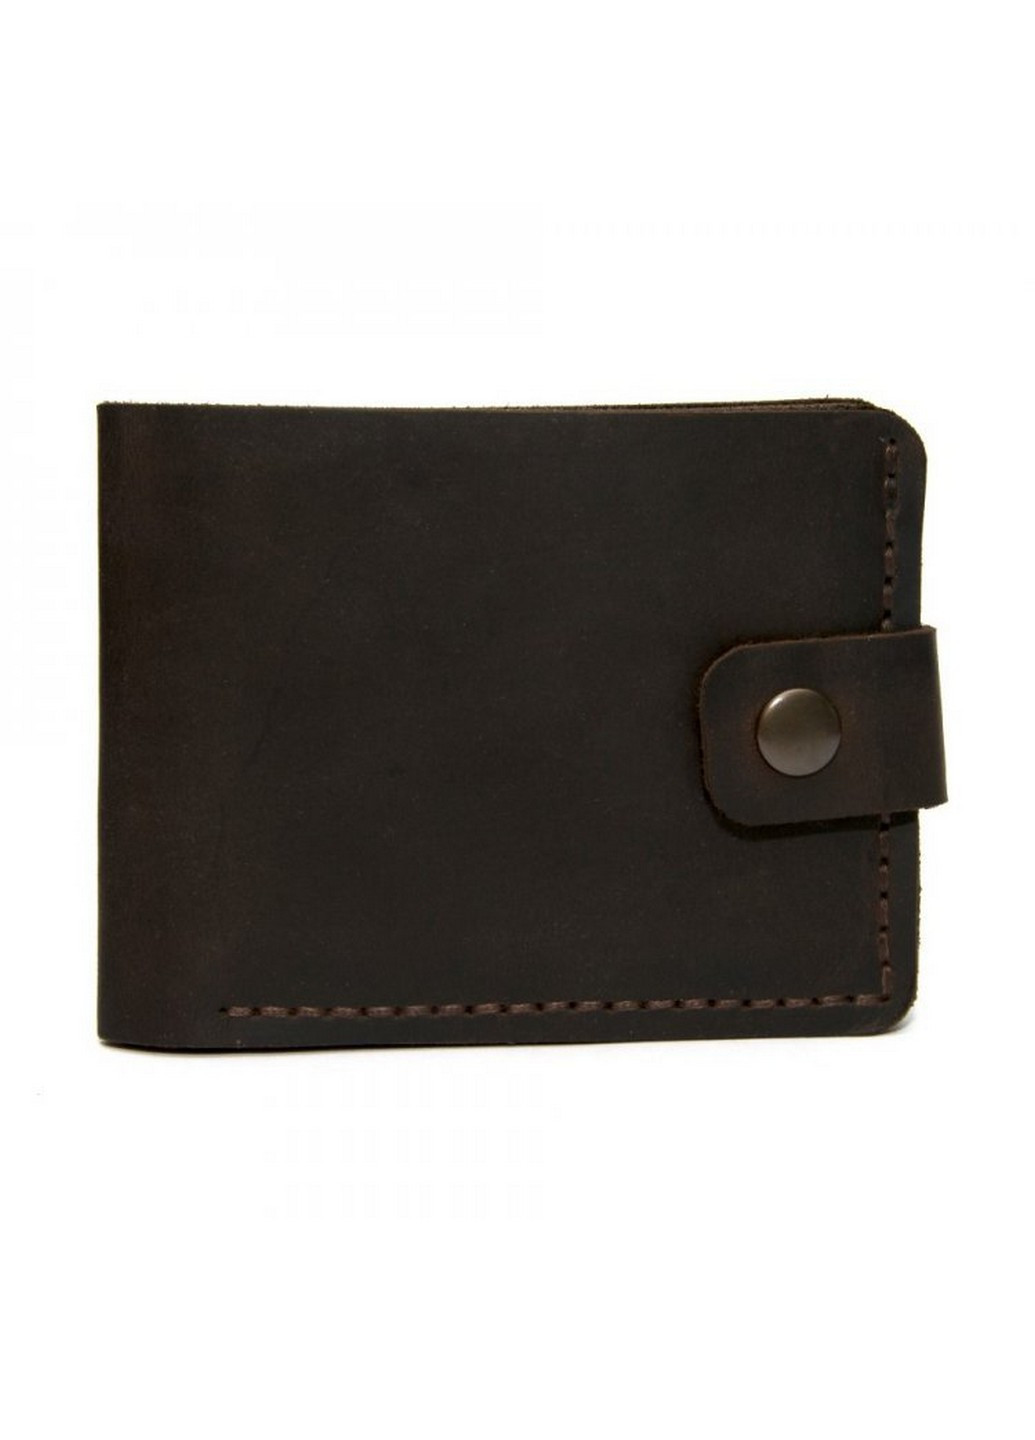 Шкіряний гаманець чоловічий 11,5х9 см GOFIN (219986790)